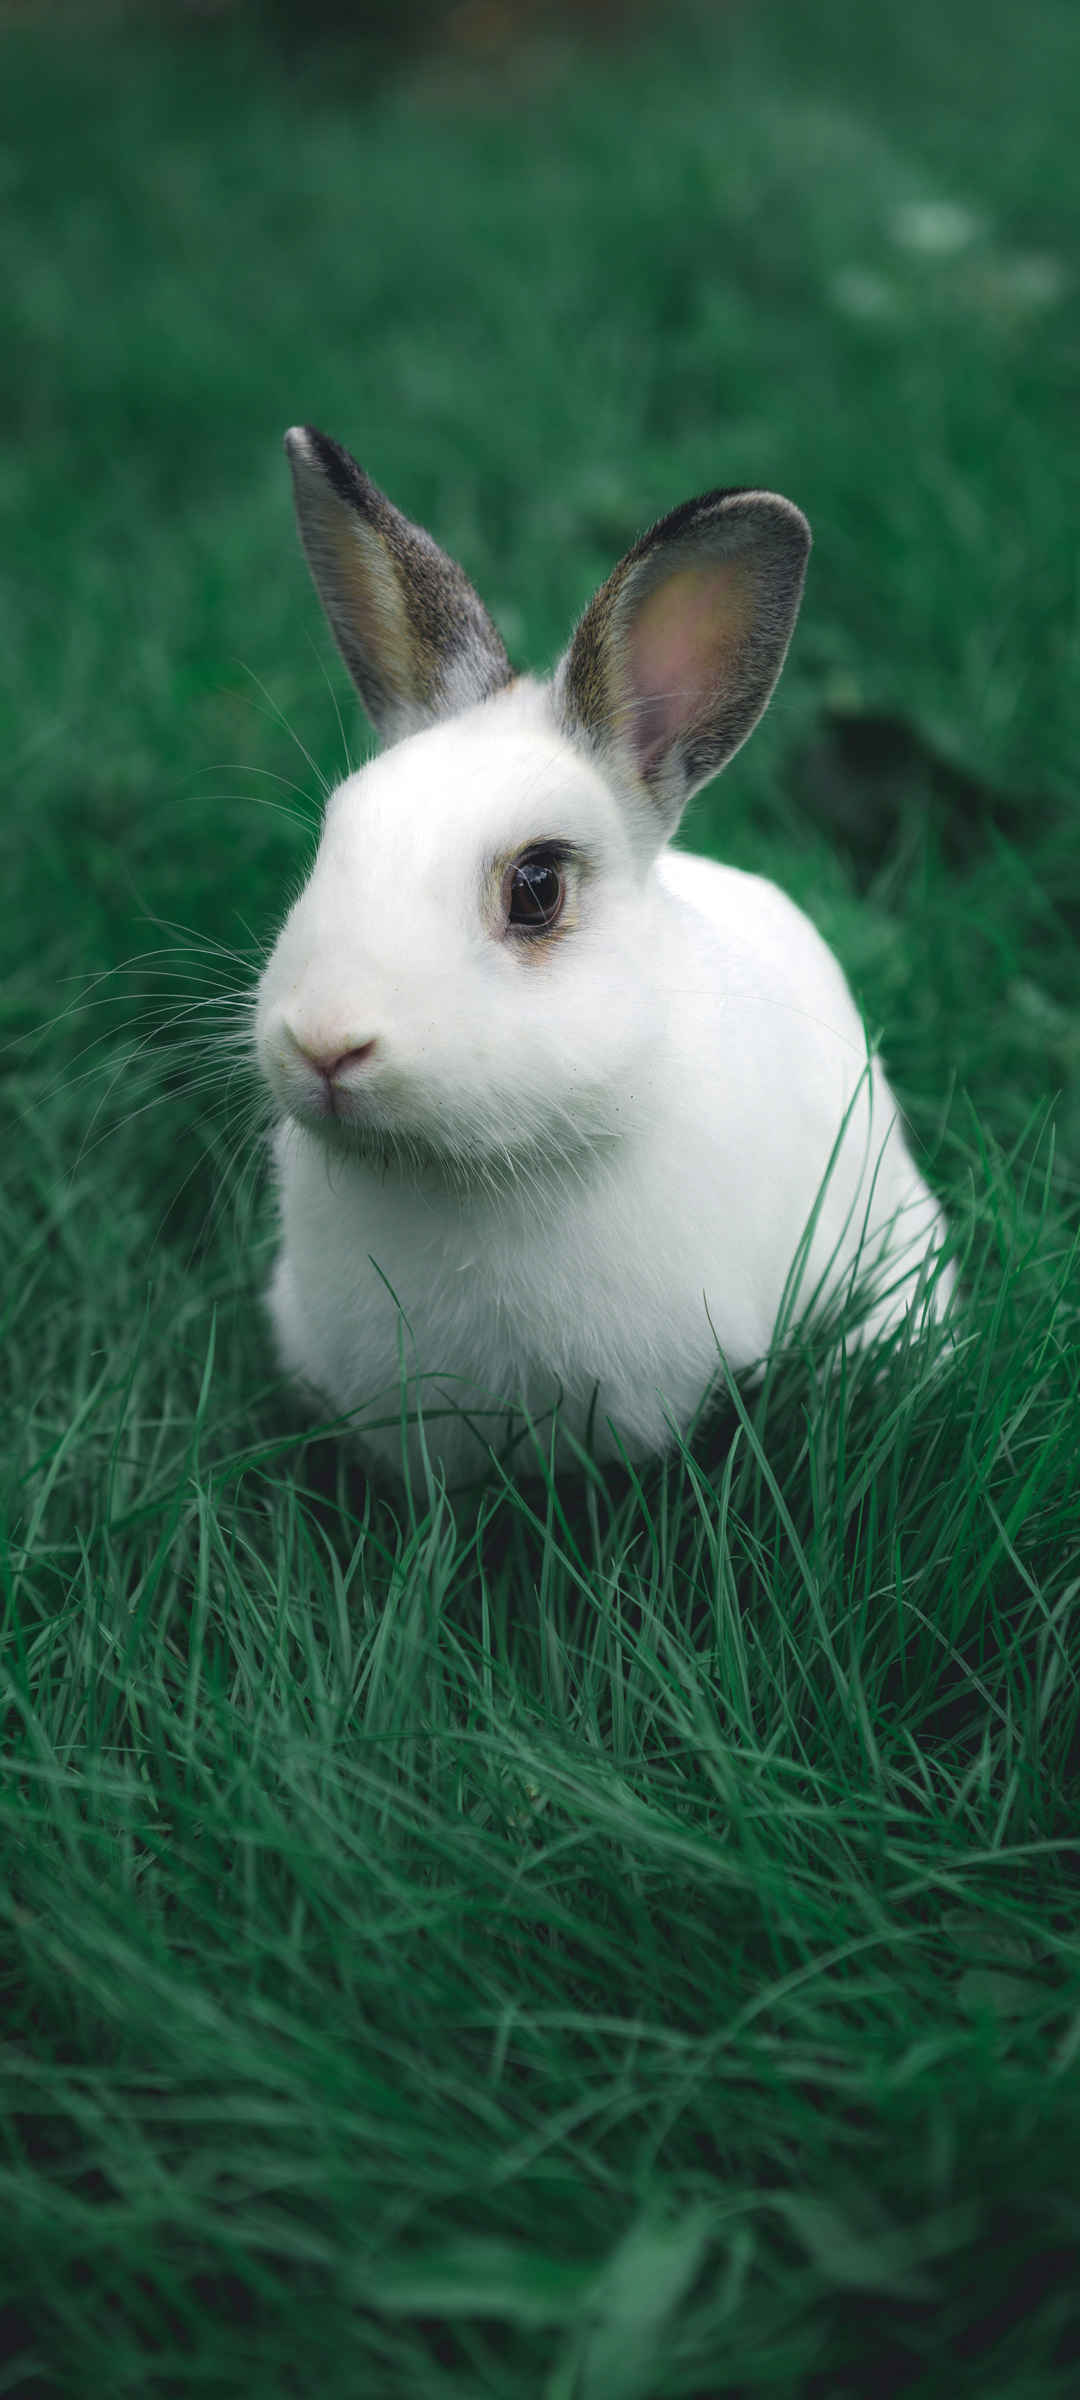 可爱小白兔子动物壁纸呆萌